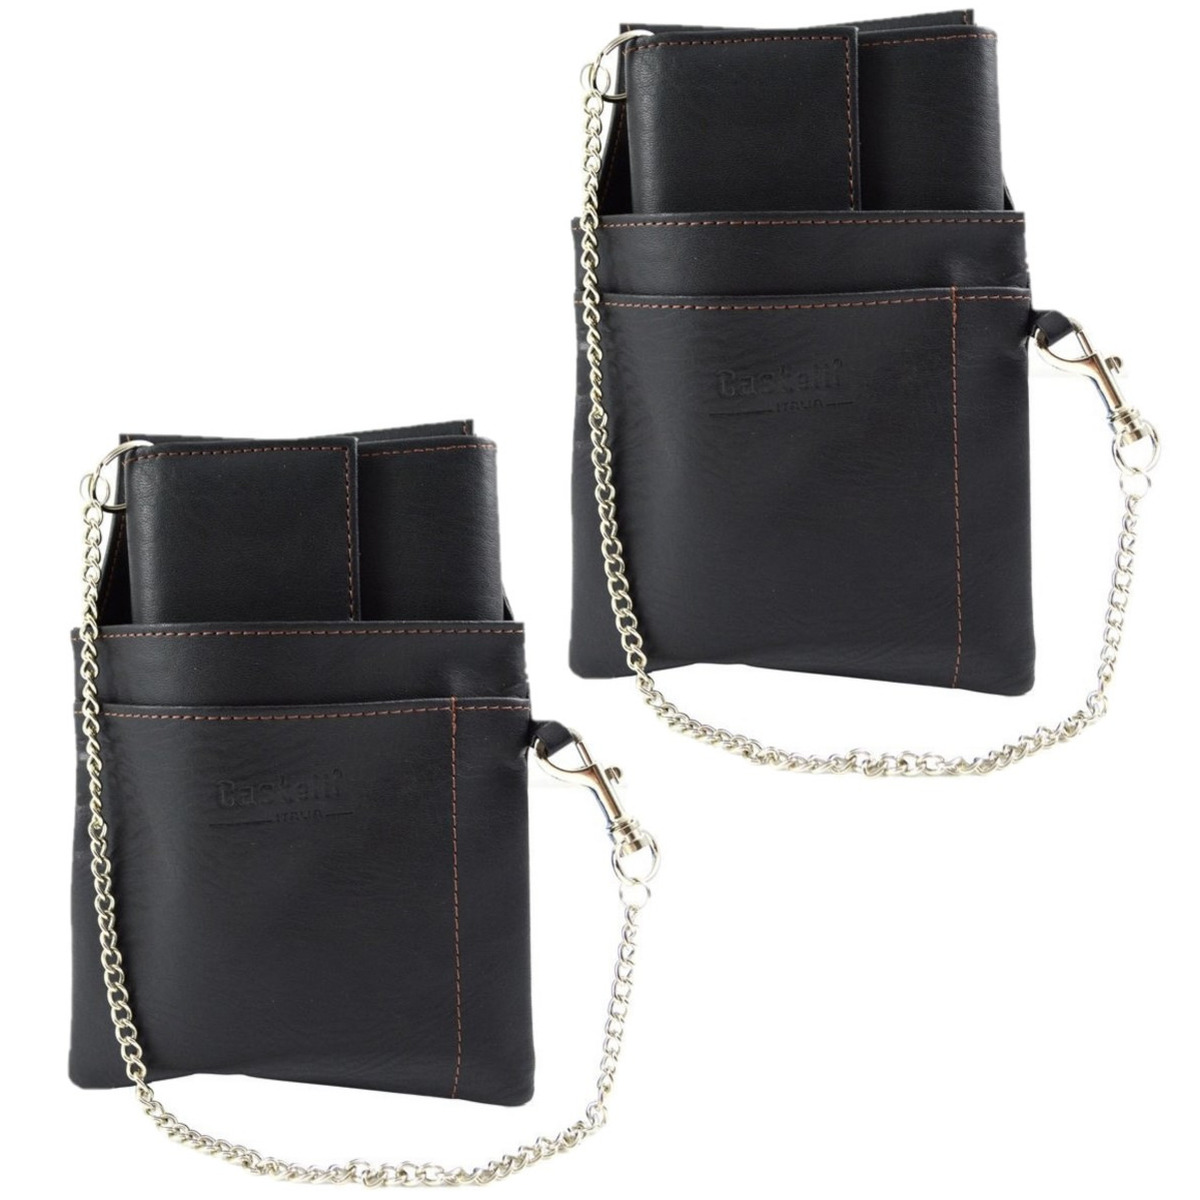 4x stuks horeca portemonnees zwart met holster en ketting18 x 10 cm